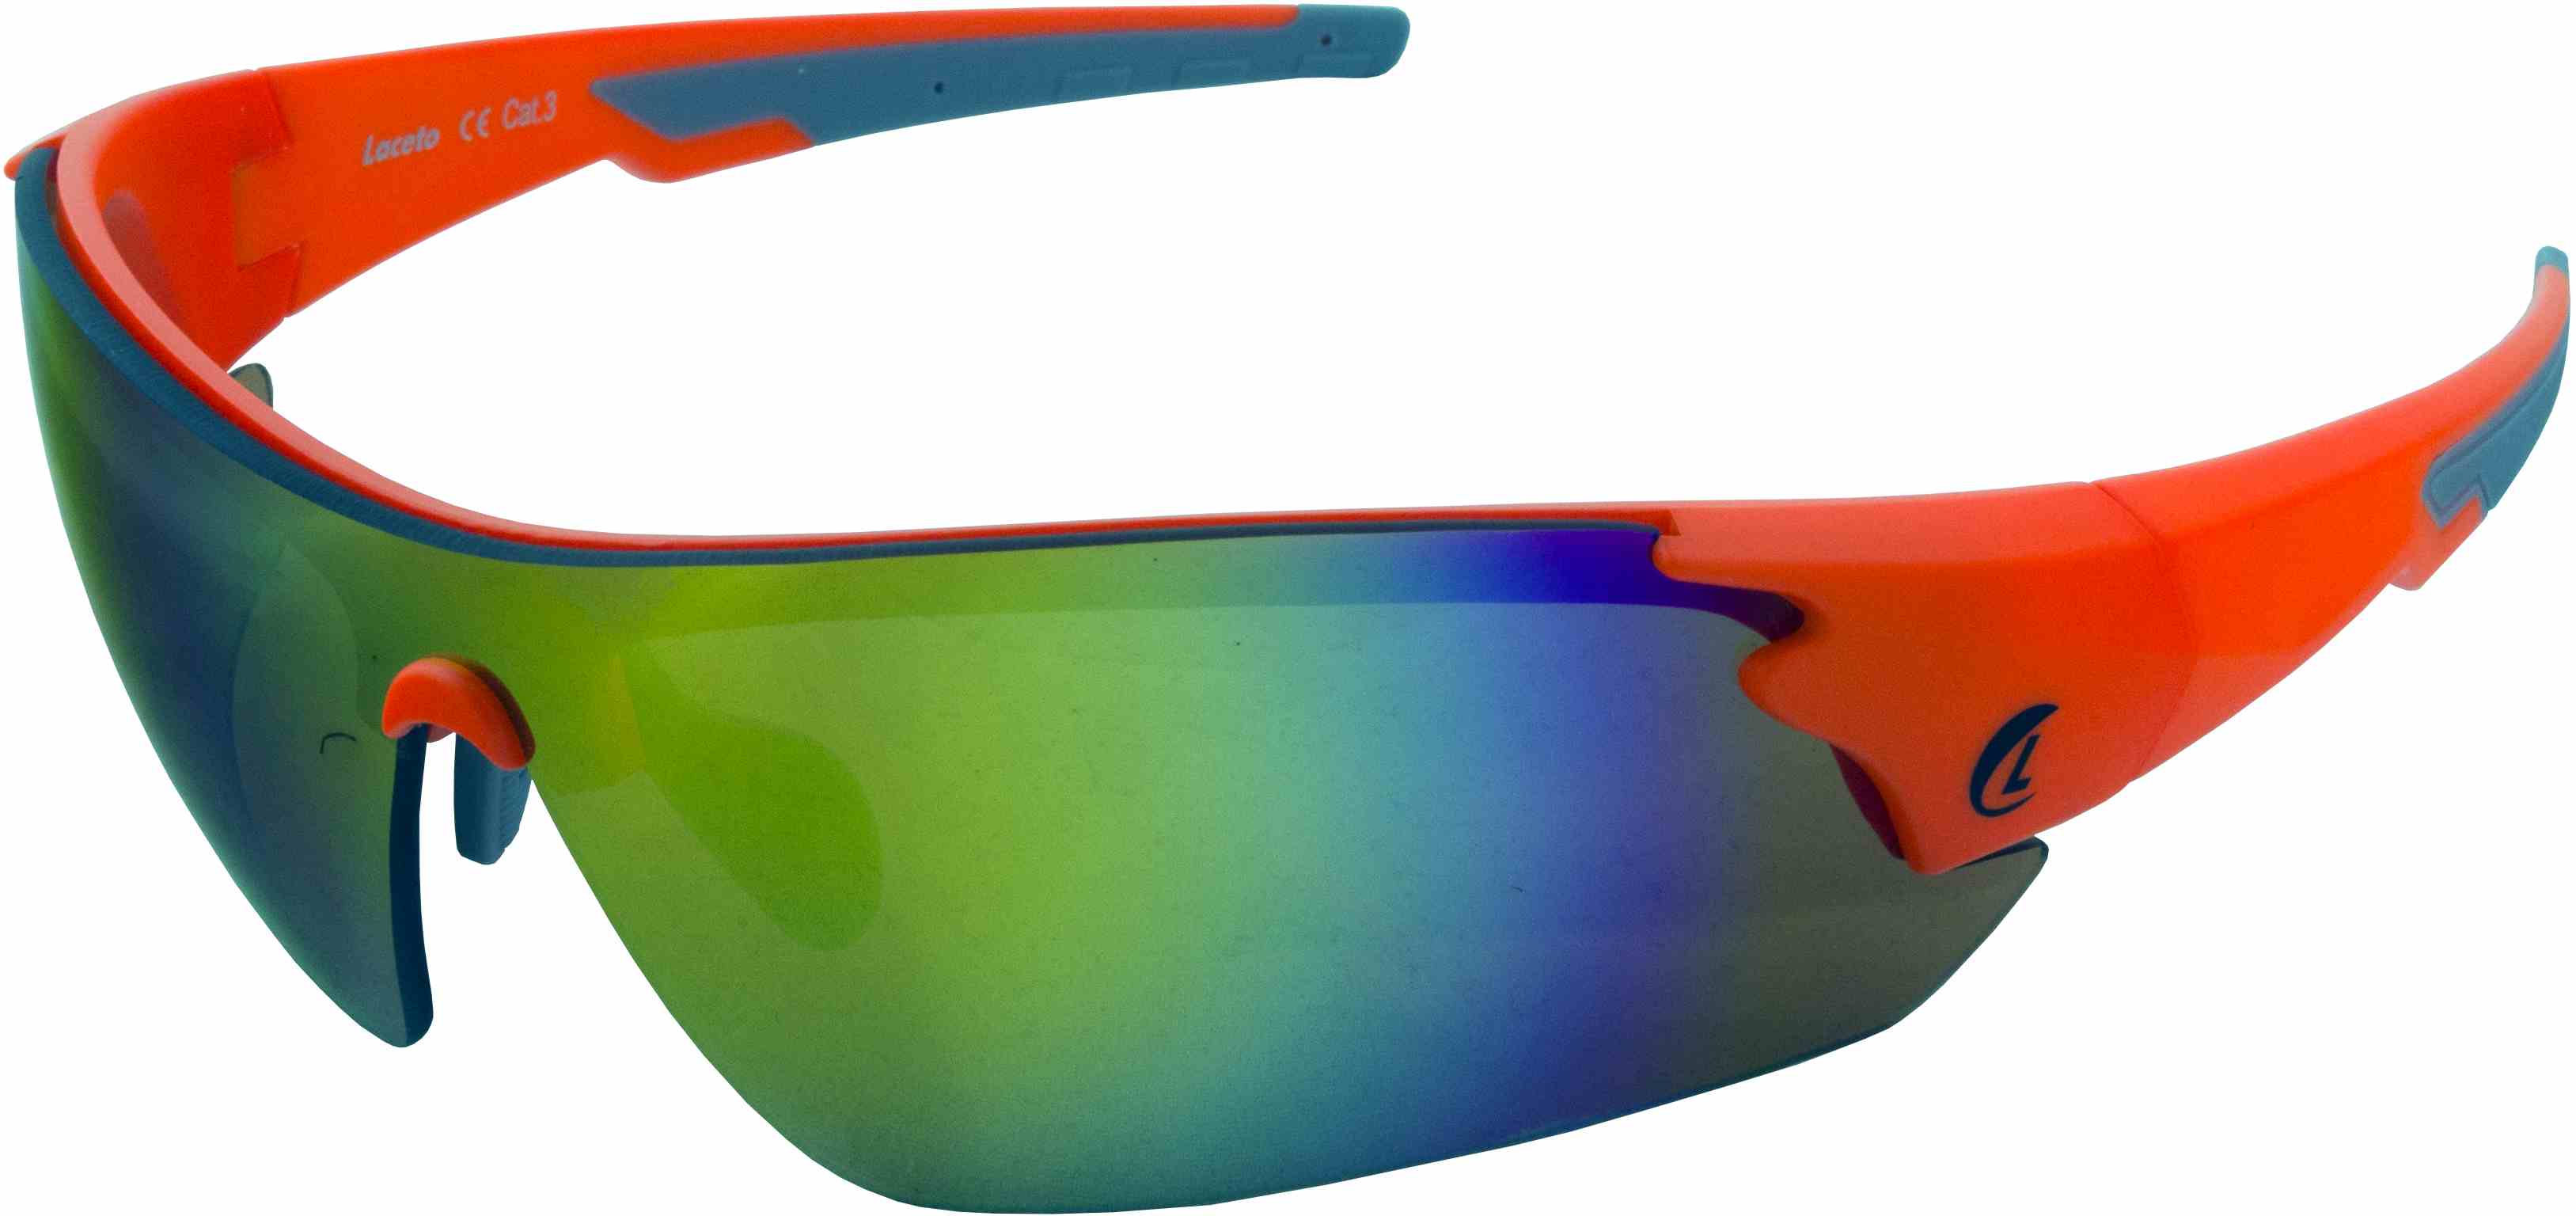 Sportovní sluneční brýle